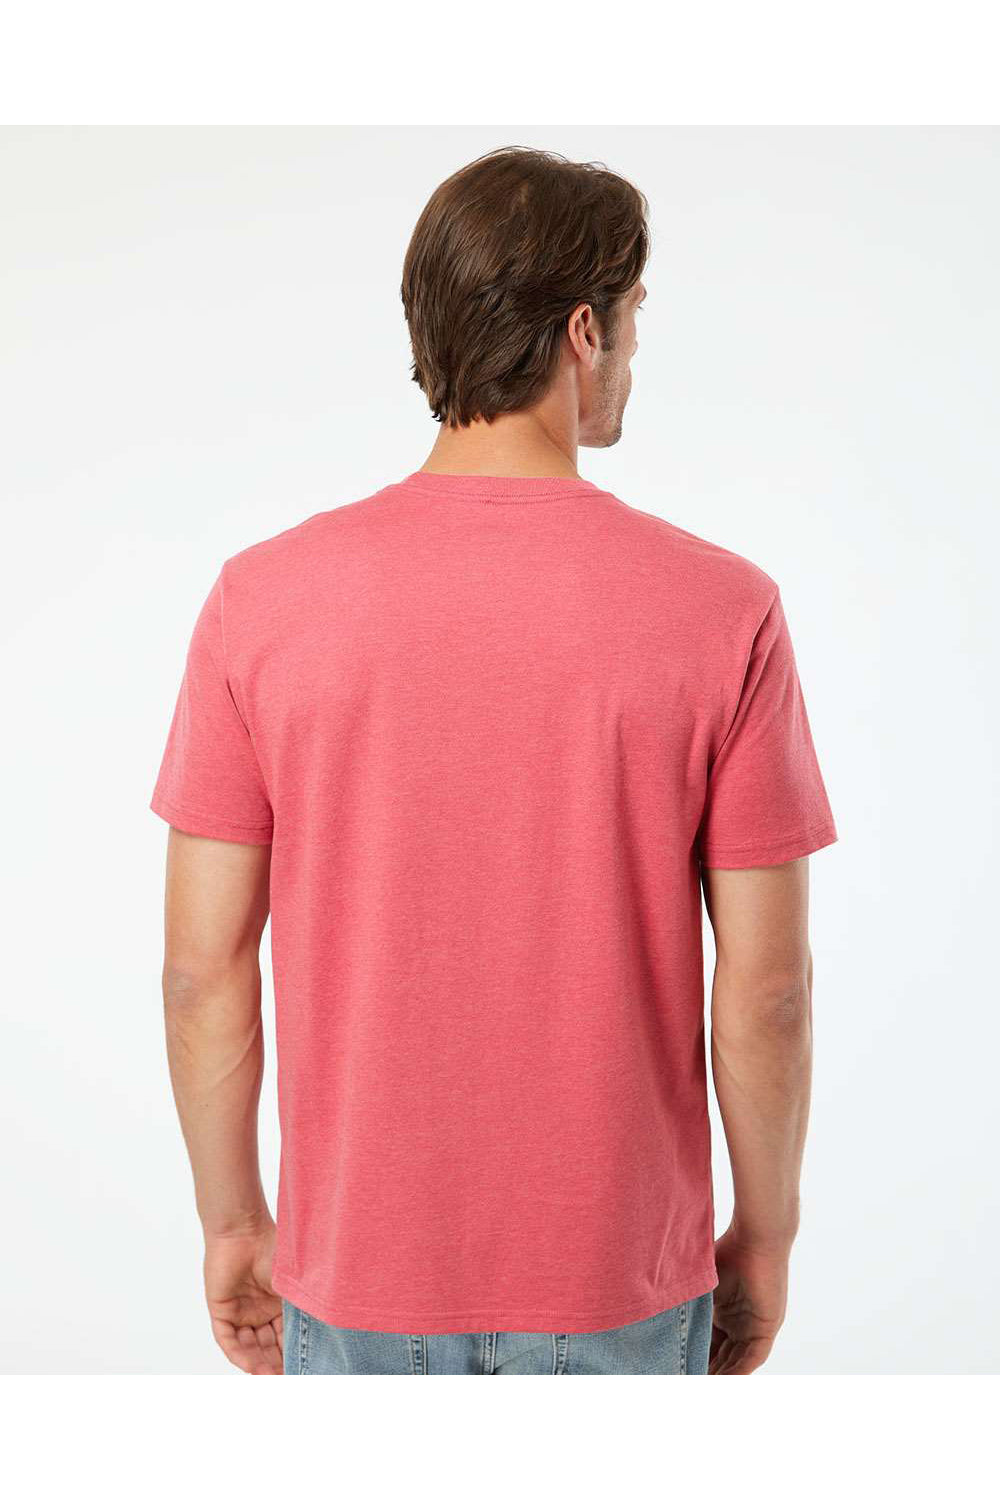 Kastlfel 2010 Mens RecycledSoft Short Sleve Crewneck T-Shirt Red Model Back